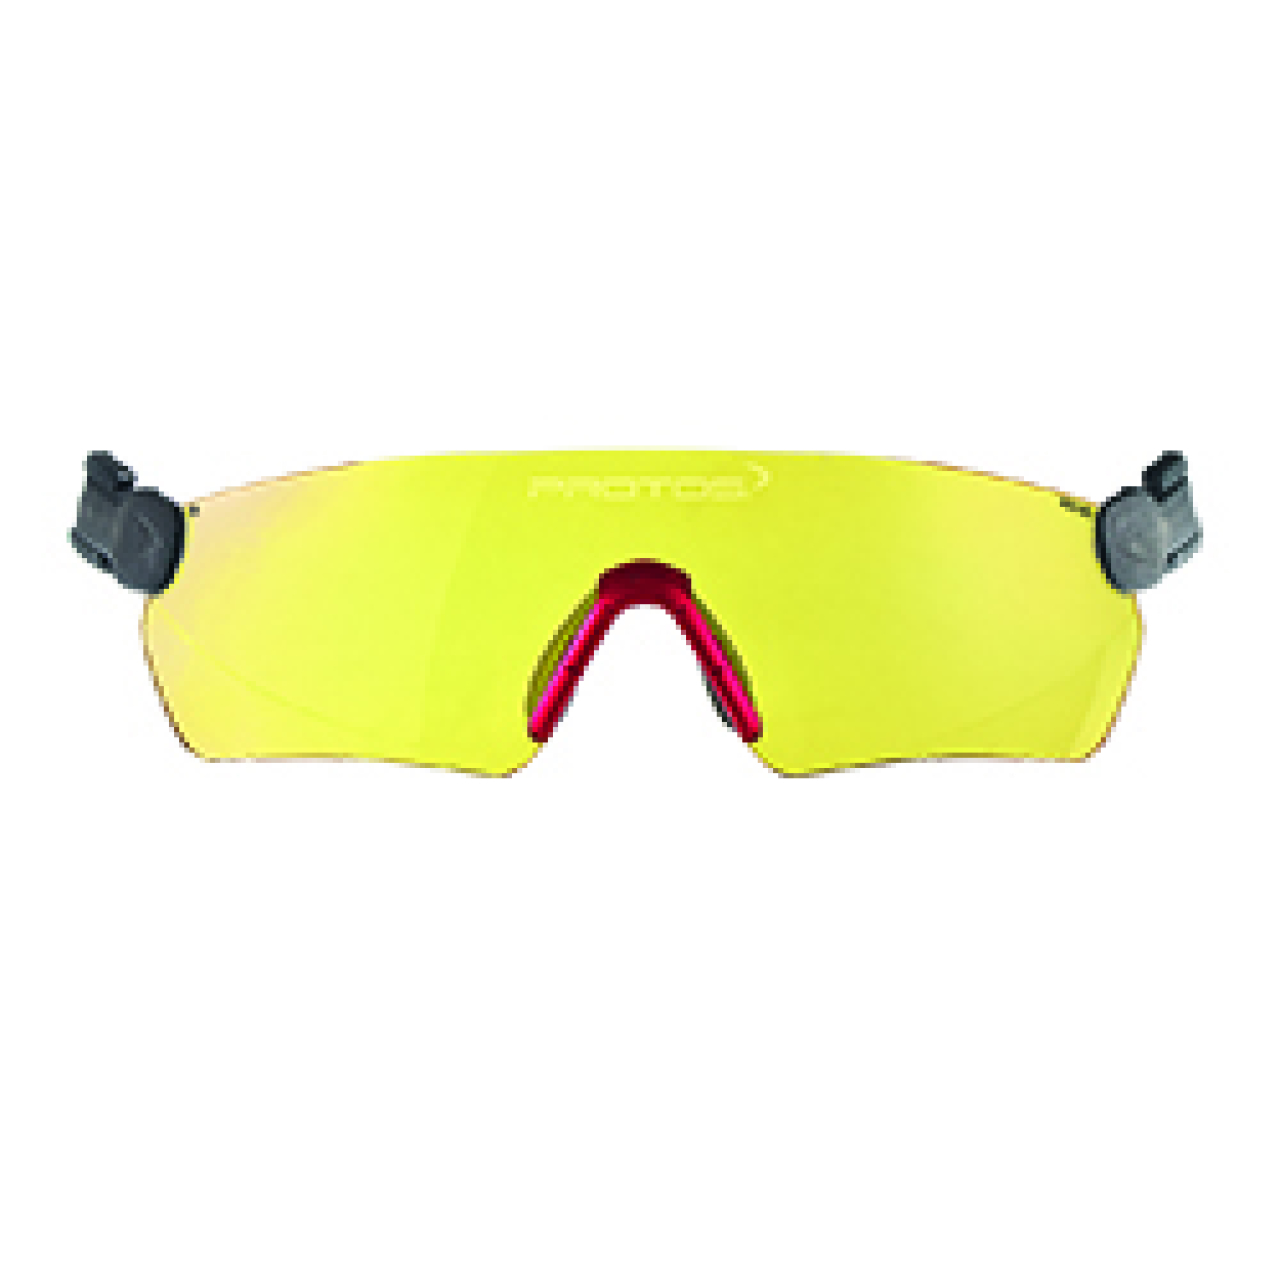 Protos® Integral Schutzbrille